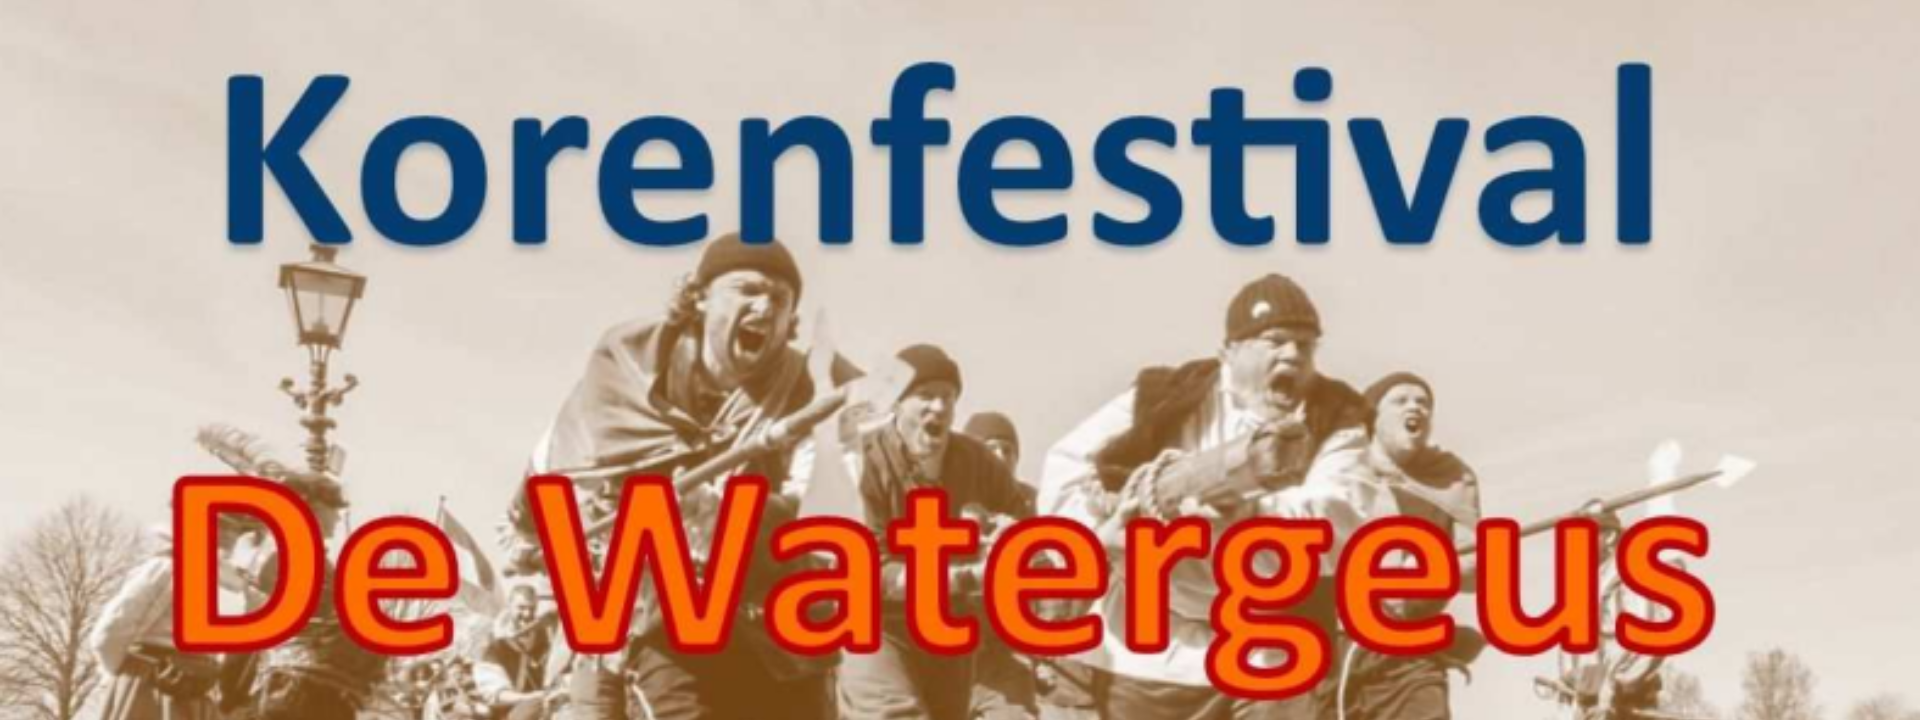 Korenfestival de Watergeus